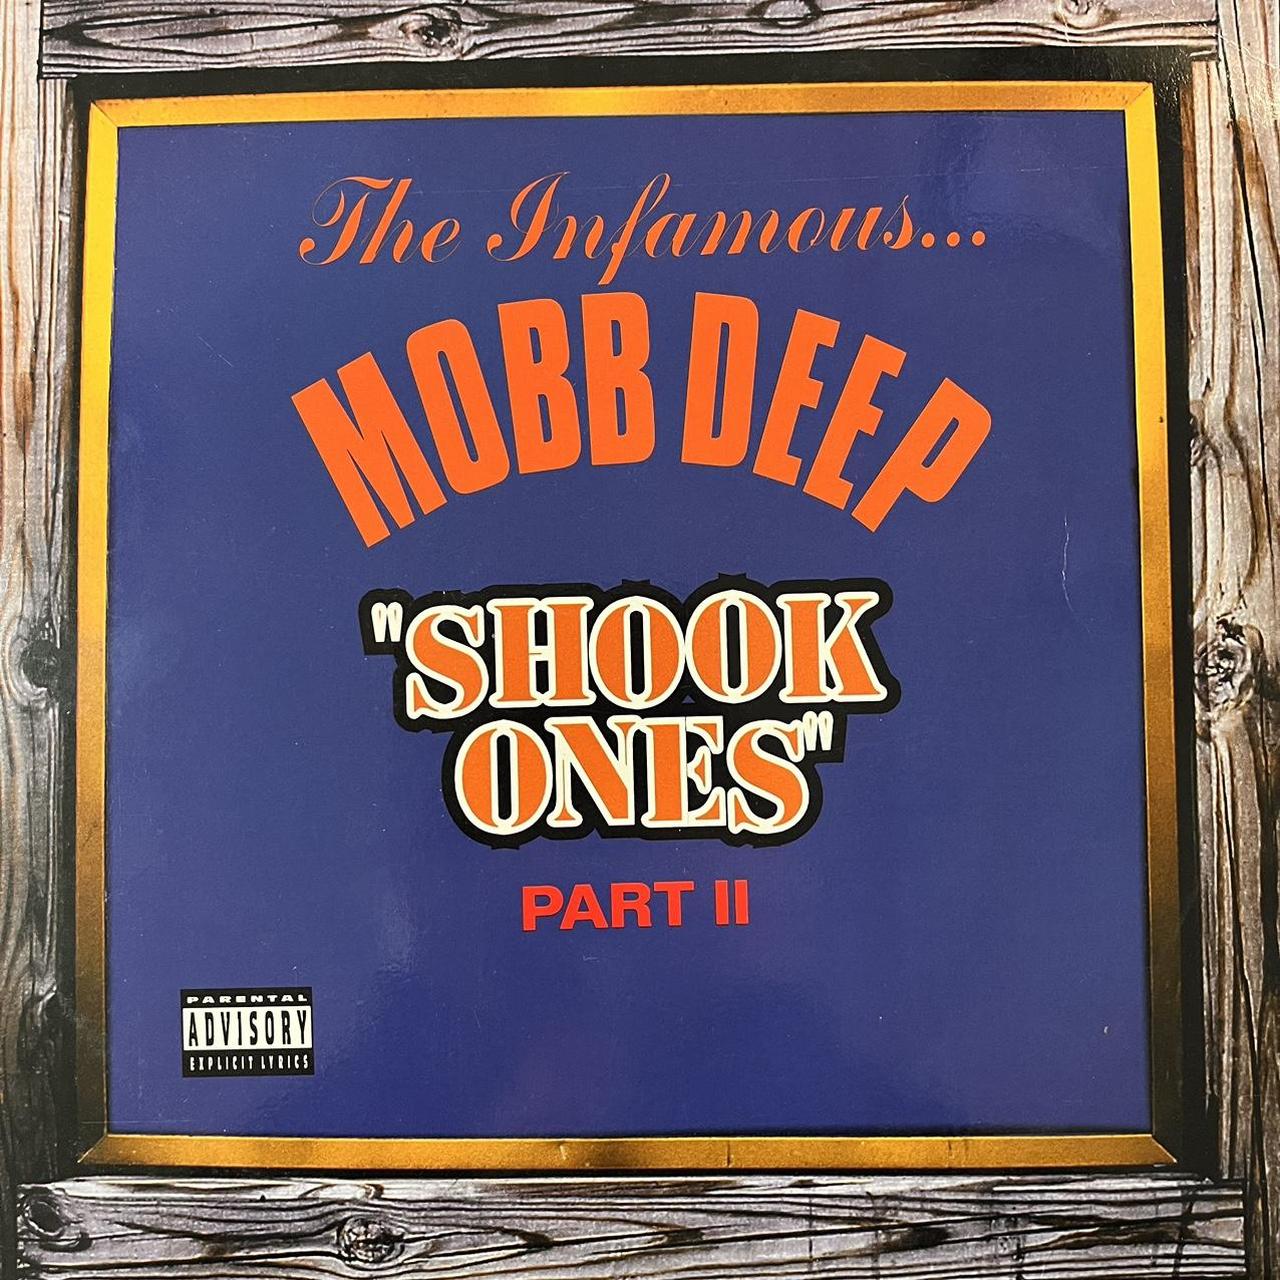 Mobb Deep “Shook Ones” Part II 6 Version 12inch Vinyl